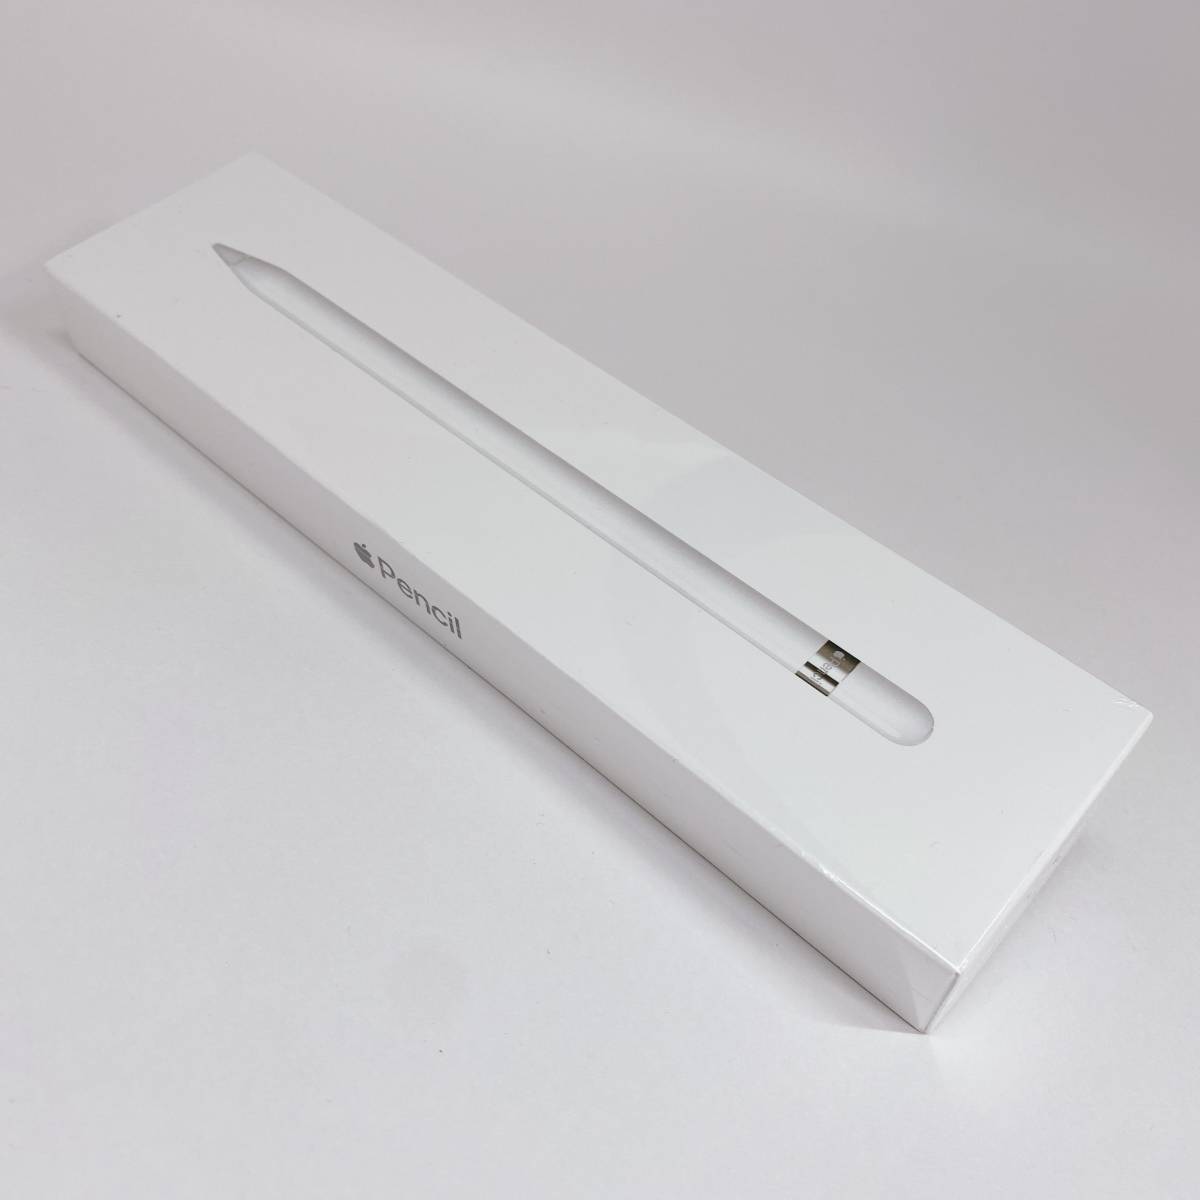 新品未開封Apple Pencil 2個セット第一世代正規品送料無料複数在庫ありタブレットまとめ売り日本代购,买对网